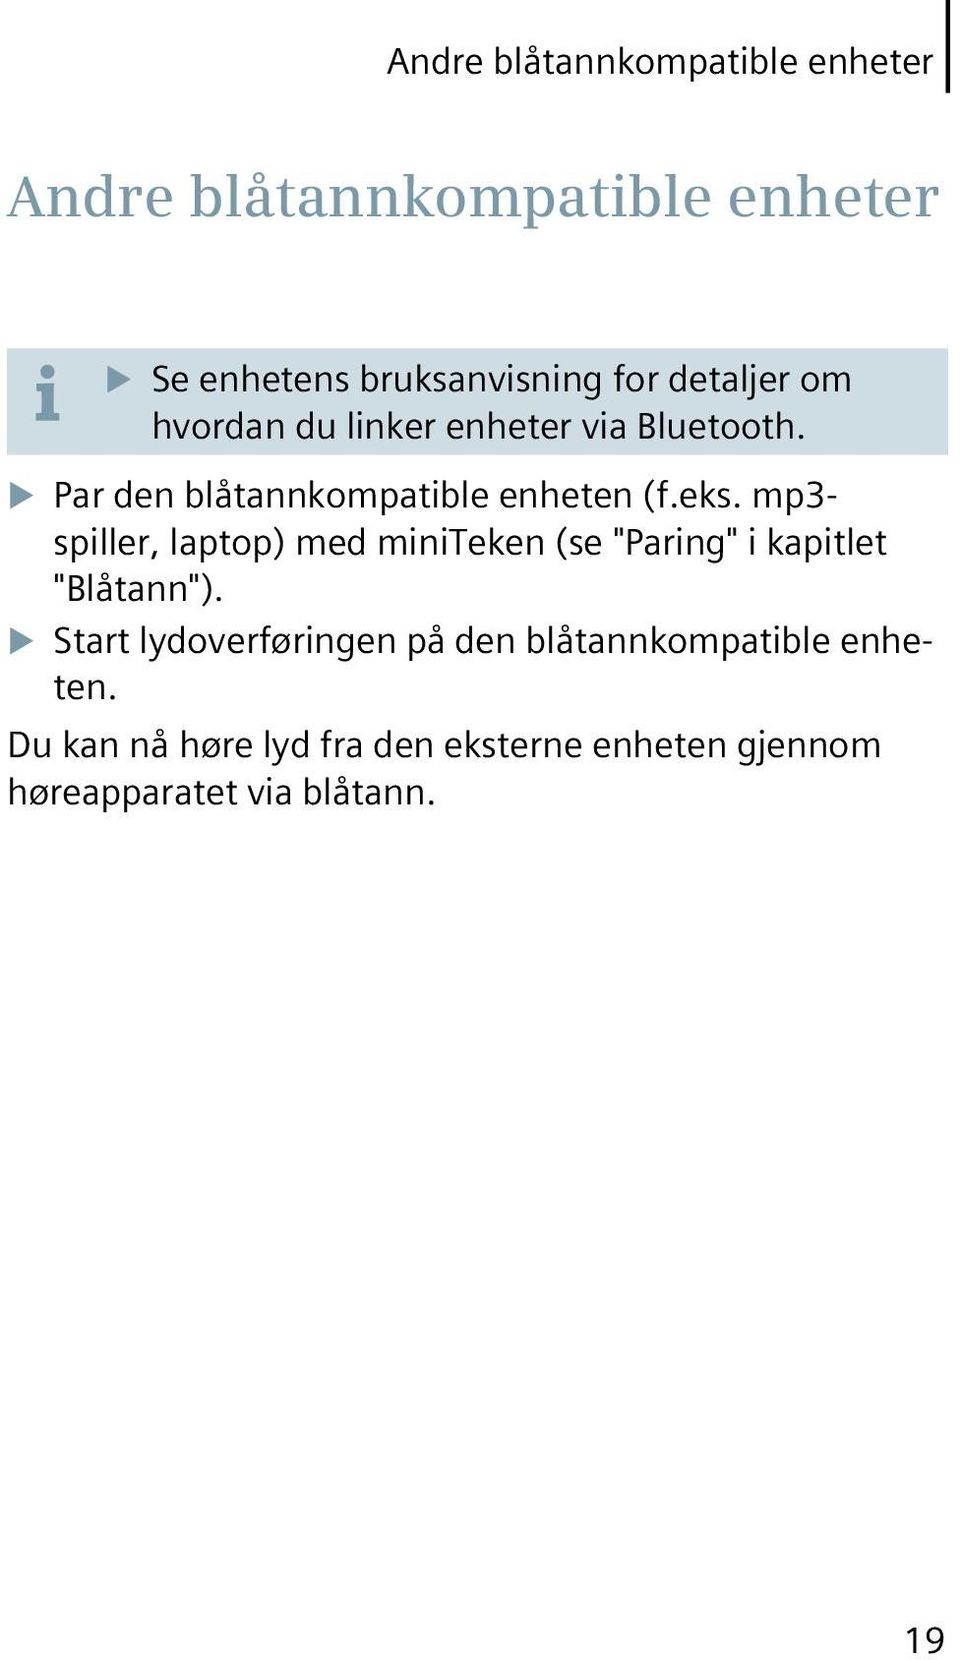 mp3- spiller, laptop) med miniteken (se "Paring" i kapitlet "Blåtann").